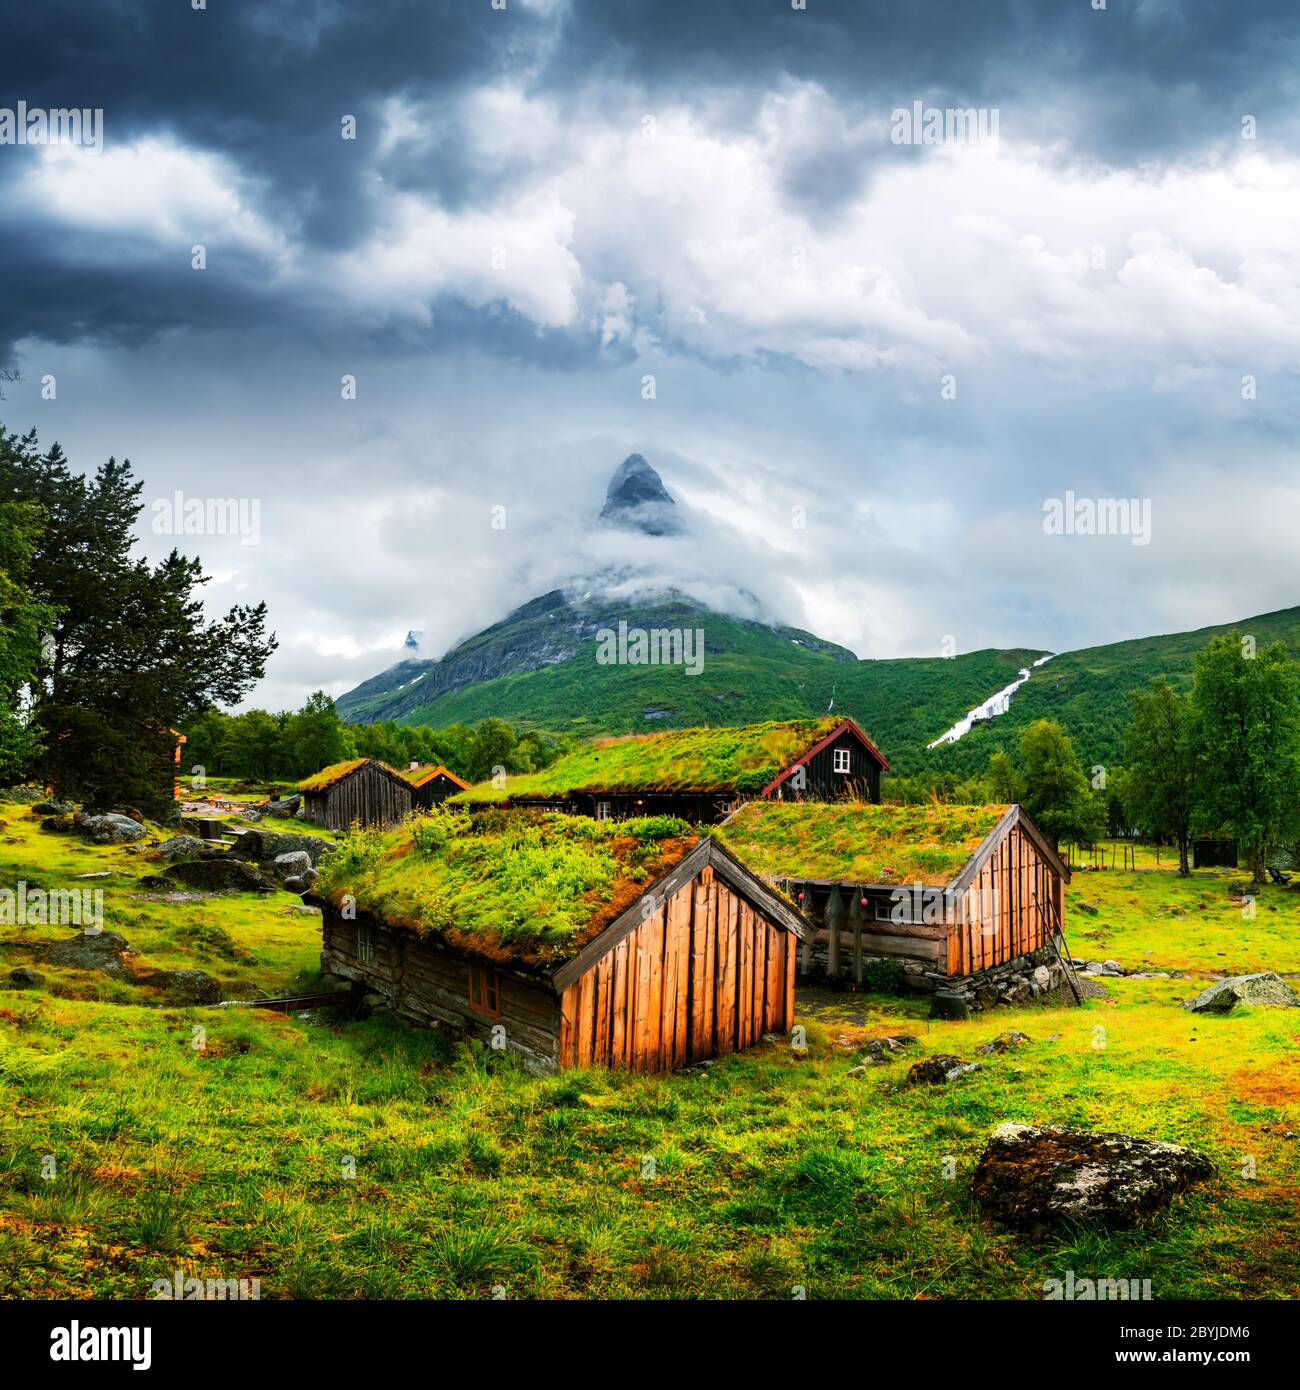 Casas de madera antiguas típicas noruegas con techos de hierba en Innerdalen - el valle de montaña más hermoso de Noruega, cerca del lago Innerdalsvatna. Noruega, Europa. Fotografía de paisajes Foto de stock